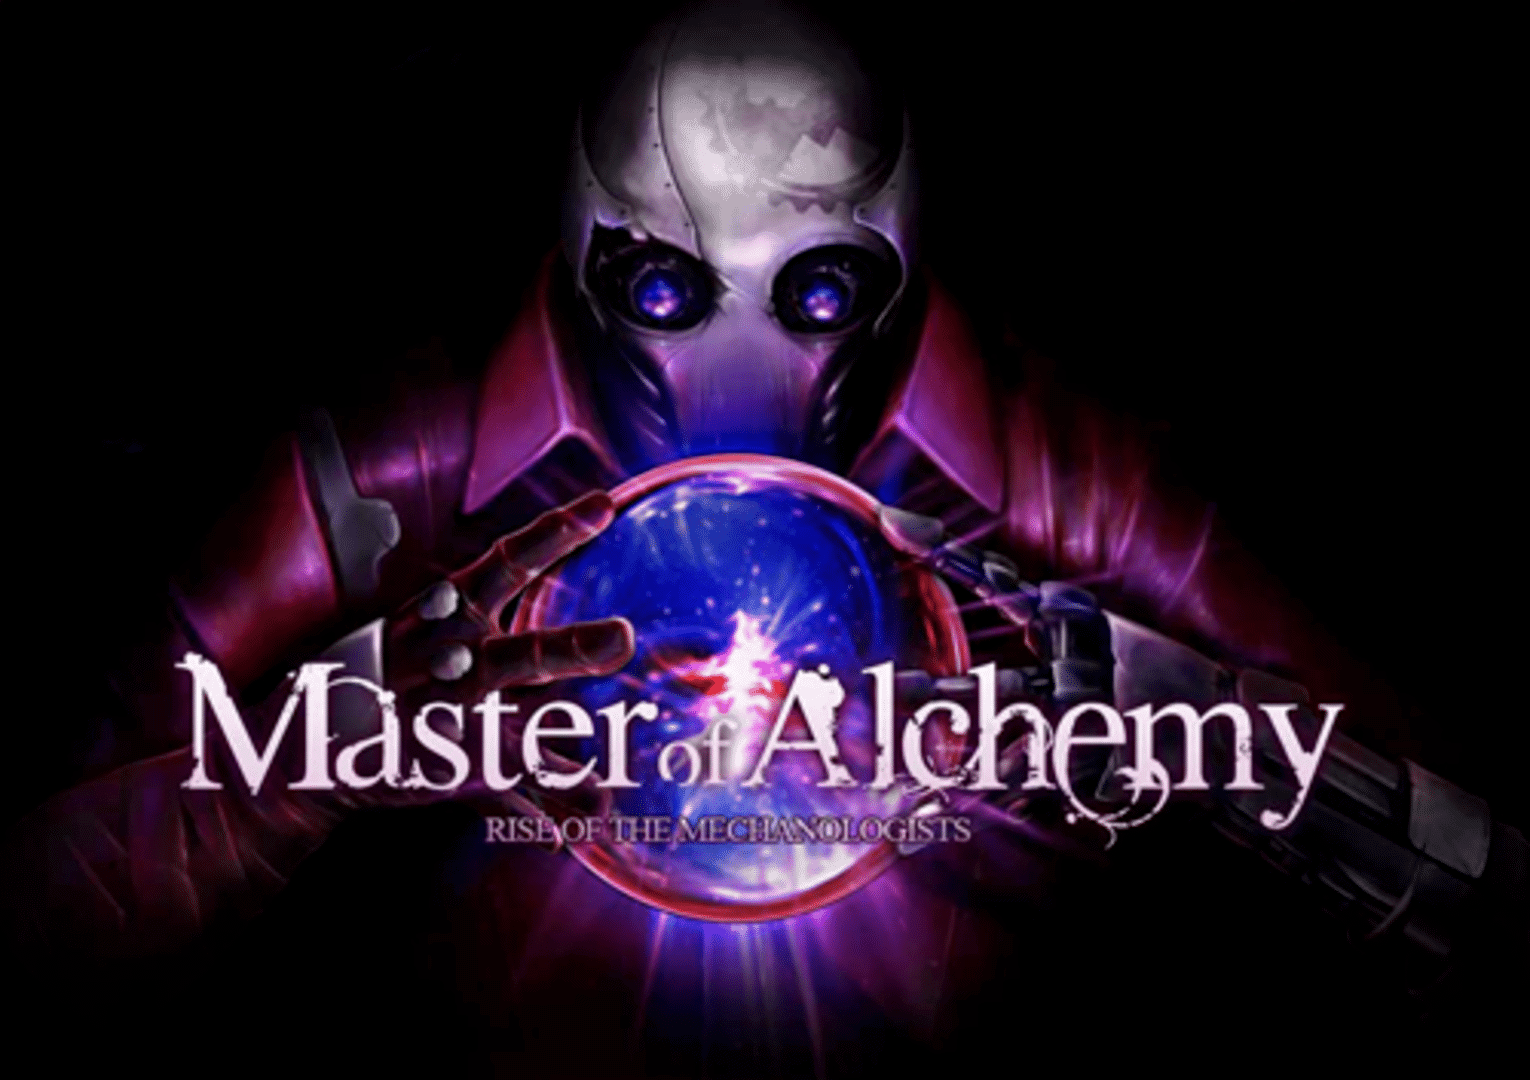 Master of Alchemy